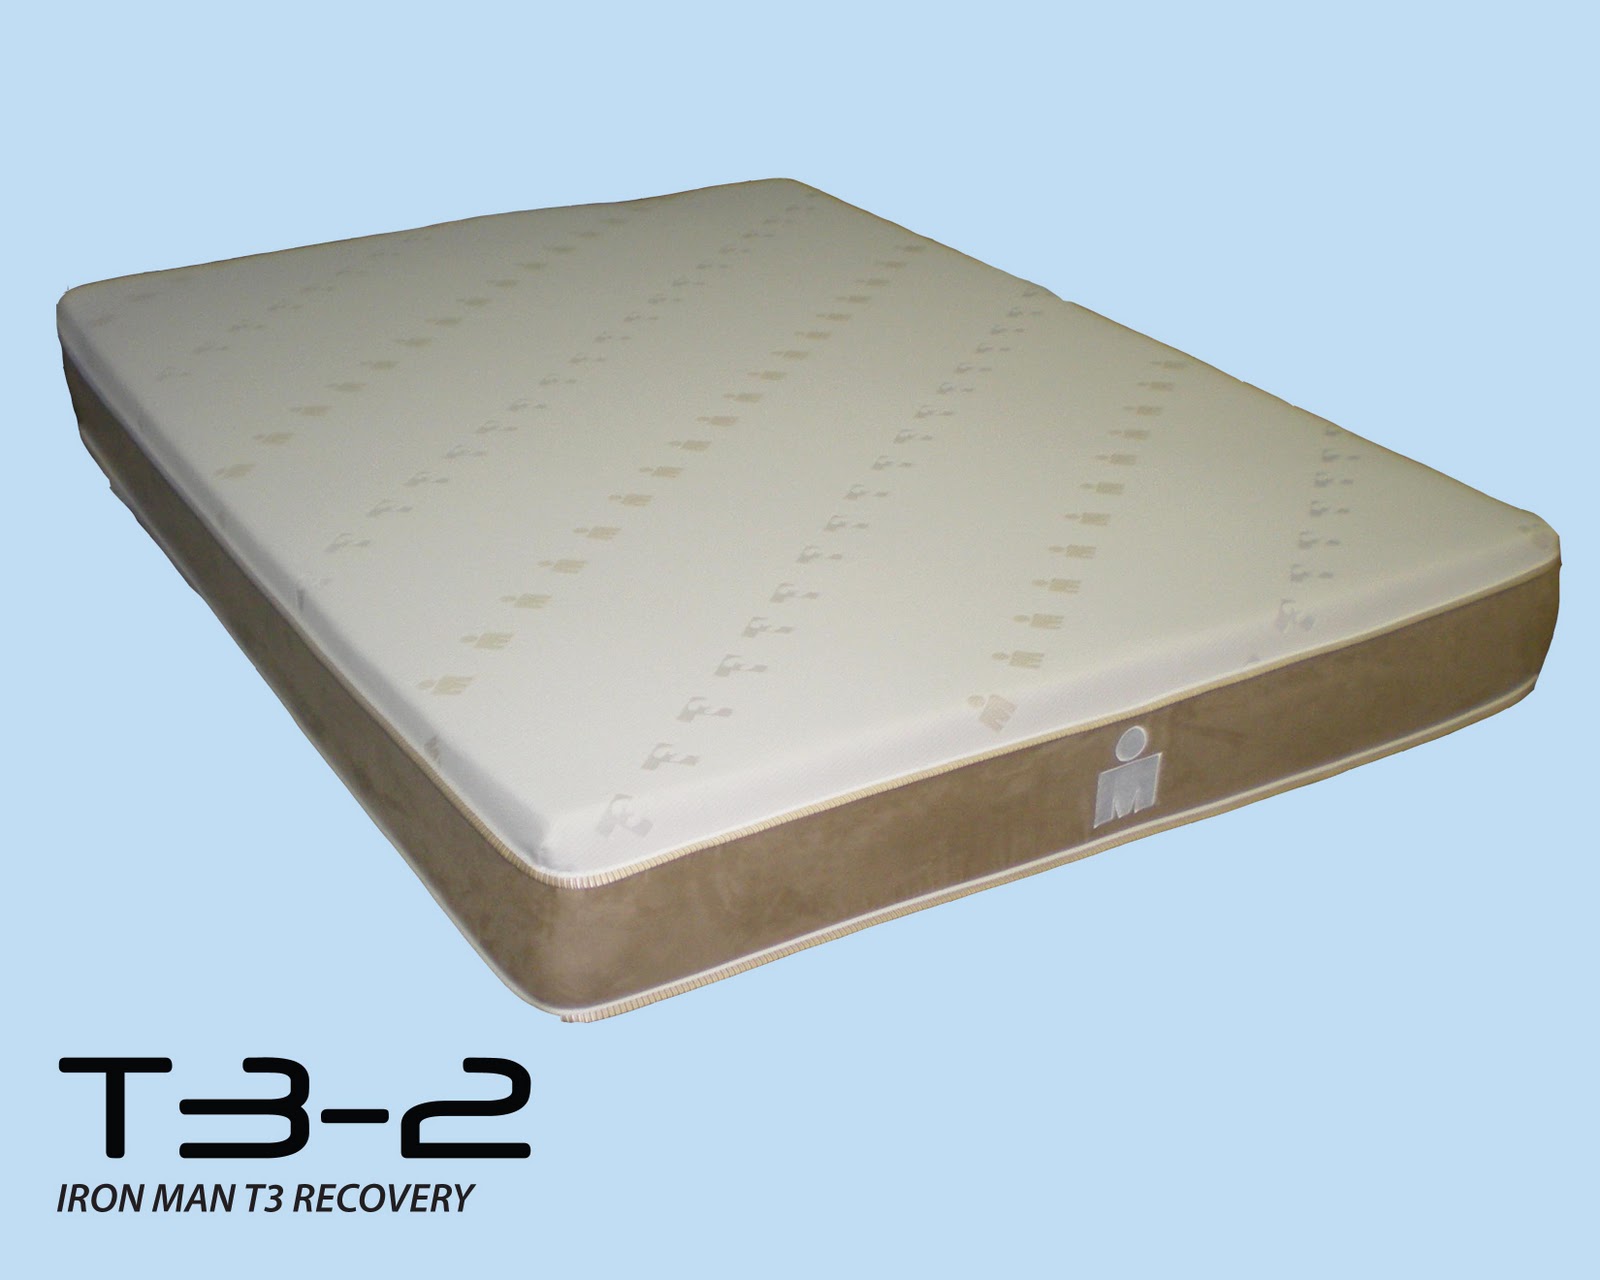 ironman t3 recovery mattress price